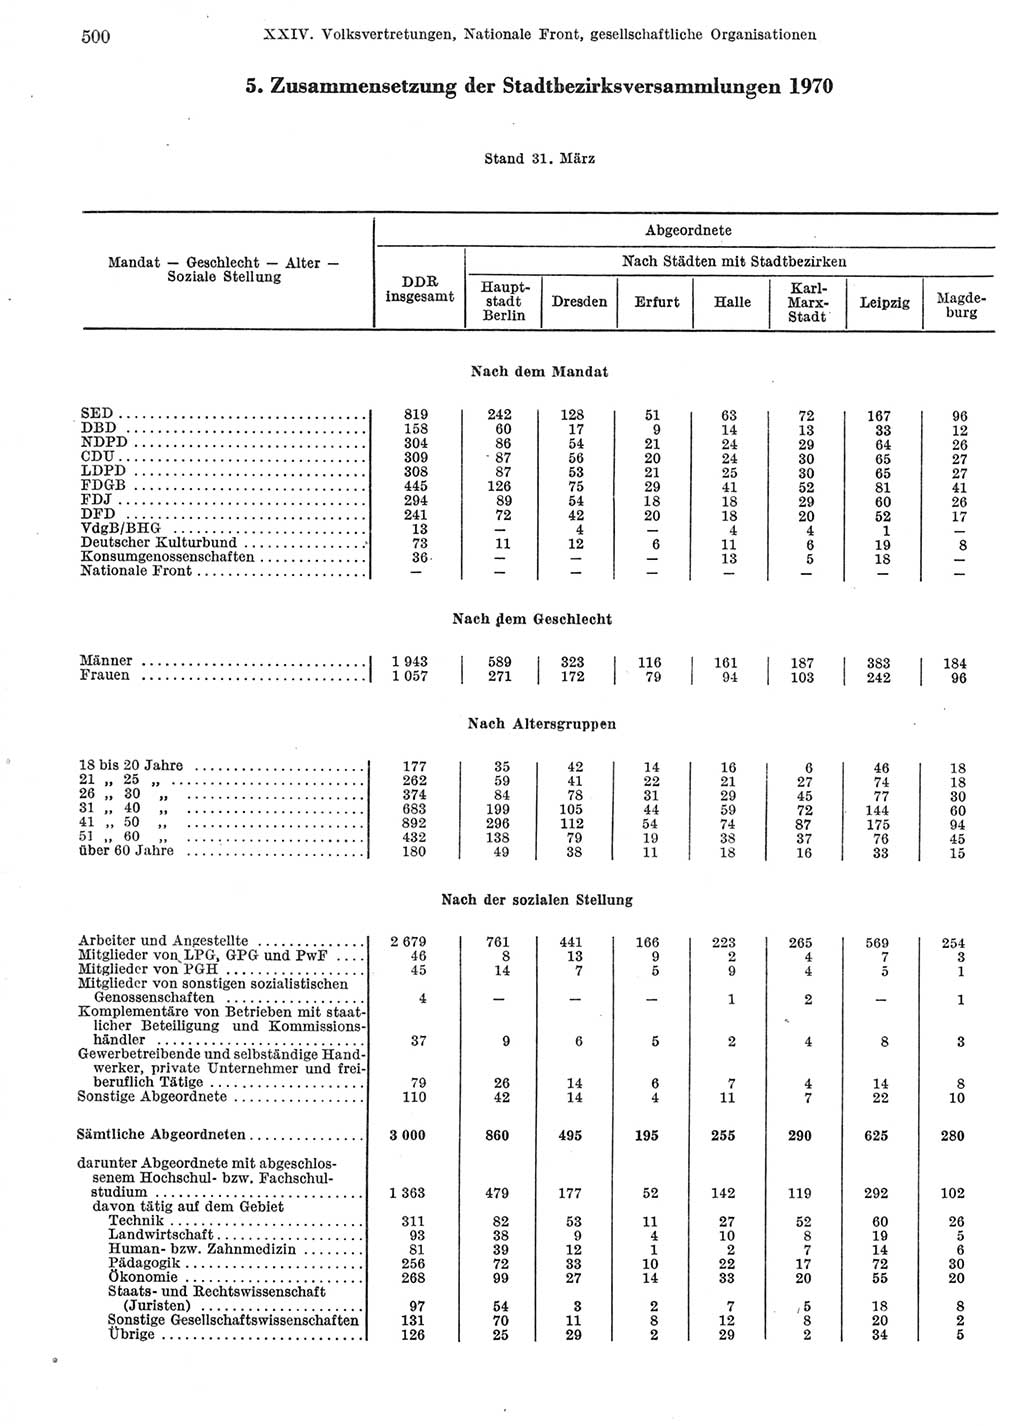 Statistisches Jahrbuch der Deutschen Demokratischen Republik (DDR) 1972, Seite 500 (Stat. Jb. DDR 1972, S. 500)